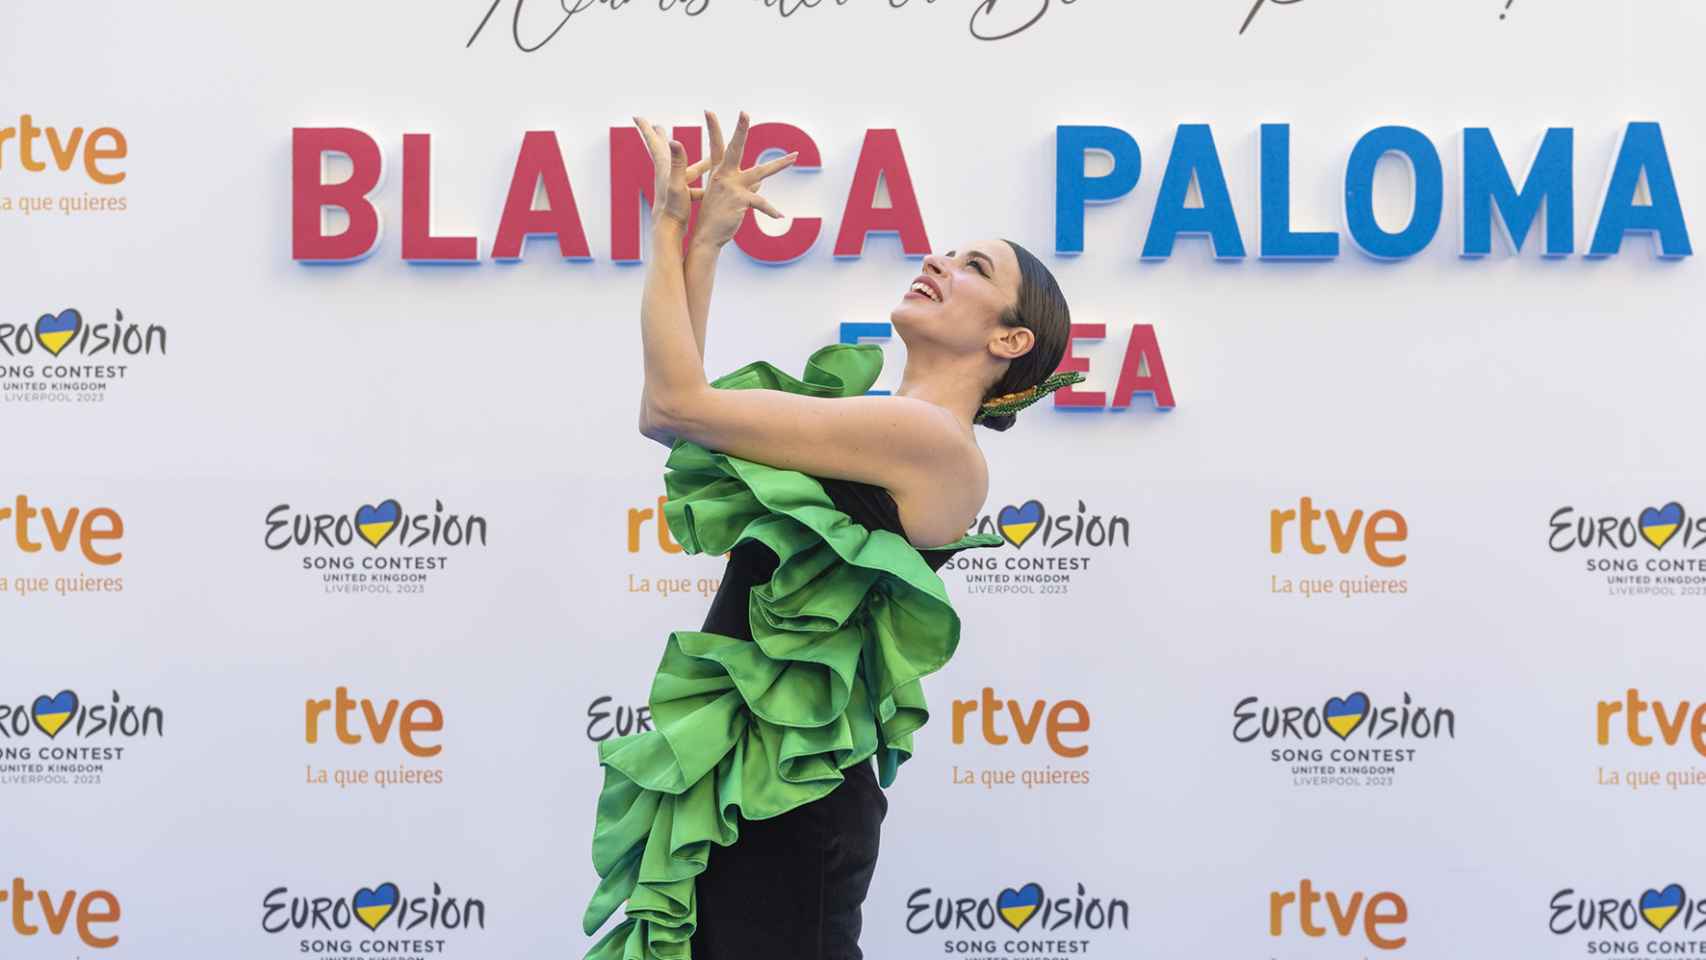 Blanca Paloma se despide de sus pichones en Madrid antes de poner rumbo a Eurovisión